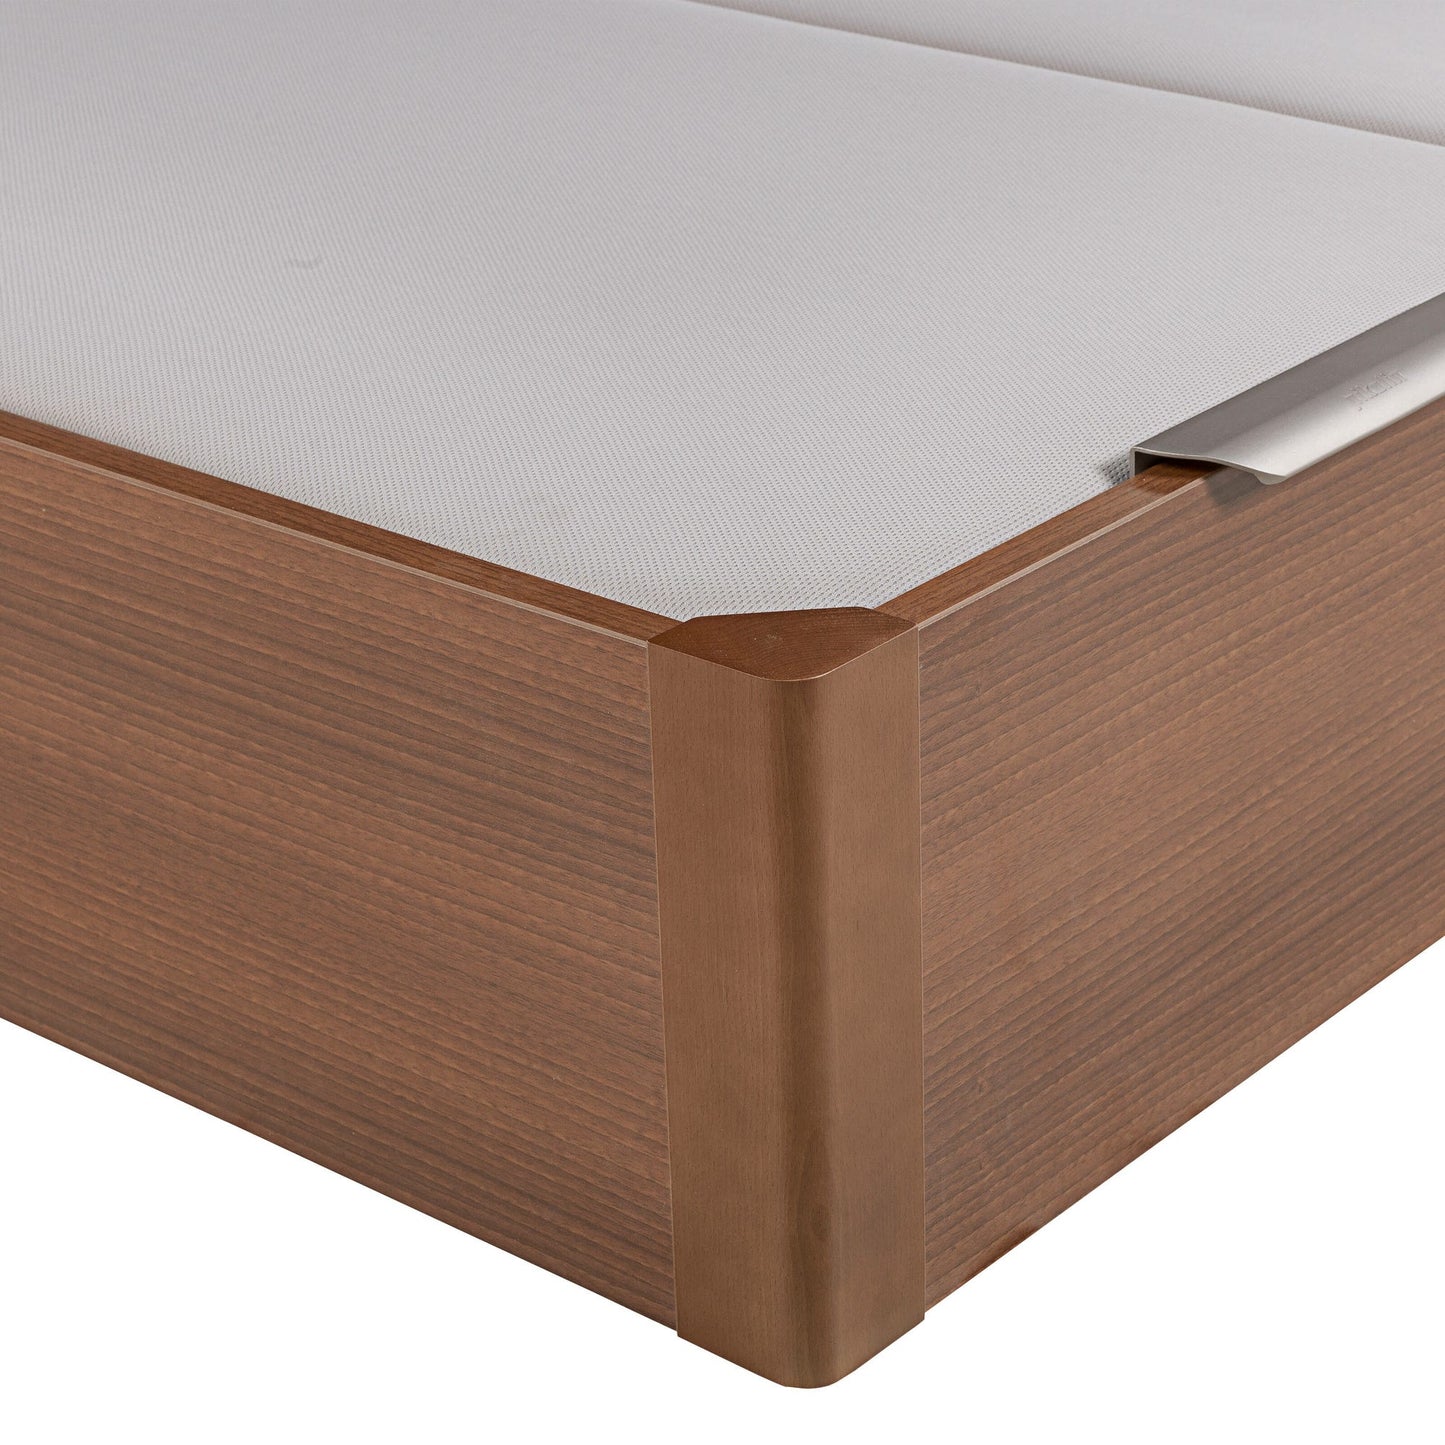 Canapé abatible de madera de tapa doble de color cerezo - DESIGN - 150x220